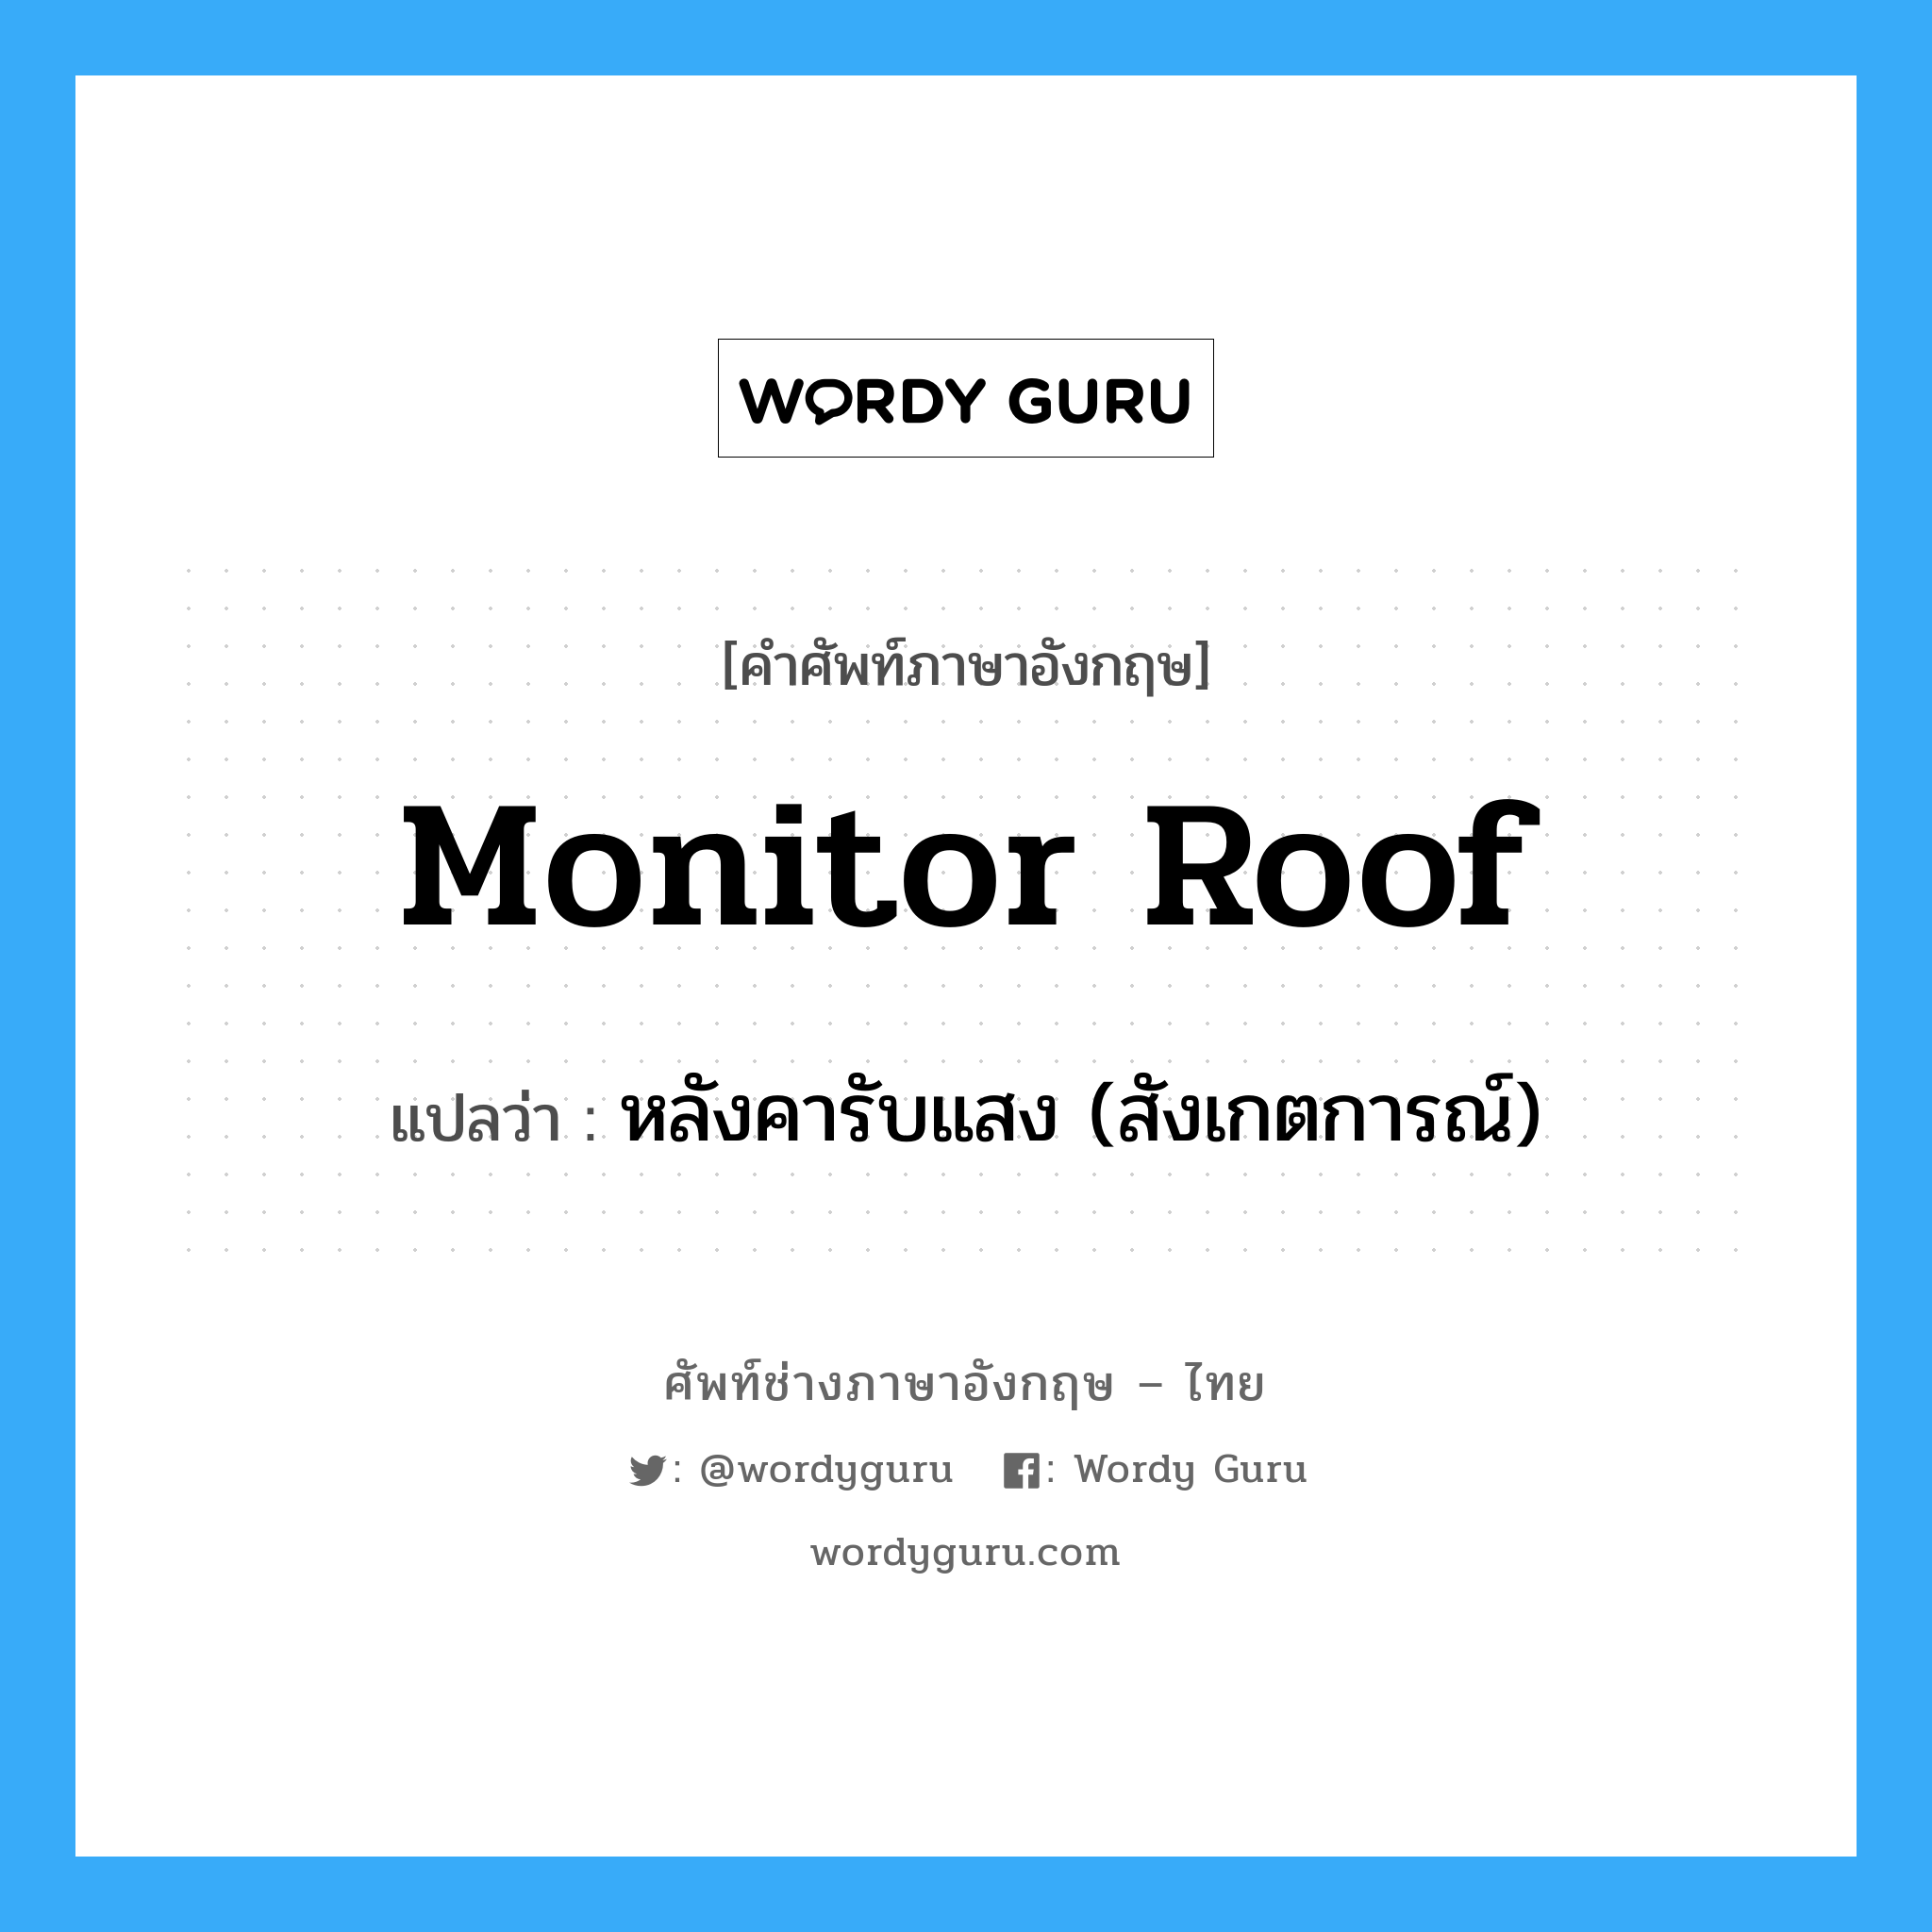 หลังคารับแสง (สังเกตการณ์) ภาษาอังกฤษ?, คำศัพท์ช่างภาษาอังกฤษ - ไทย หลังคารับแสง (สังเกตการณ์) คำศัพท์ภาษาอังกฤษ หลังคารับแสง (สังเกตการณ์) แปลว่า monitor roof